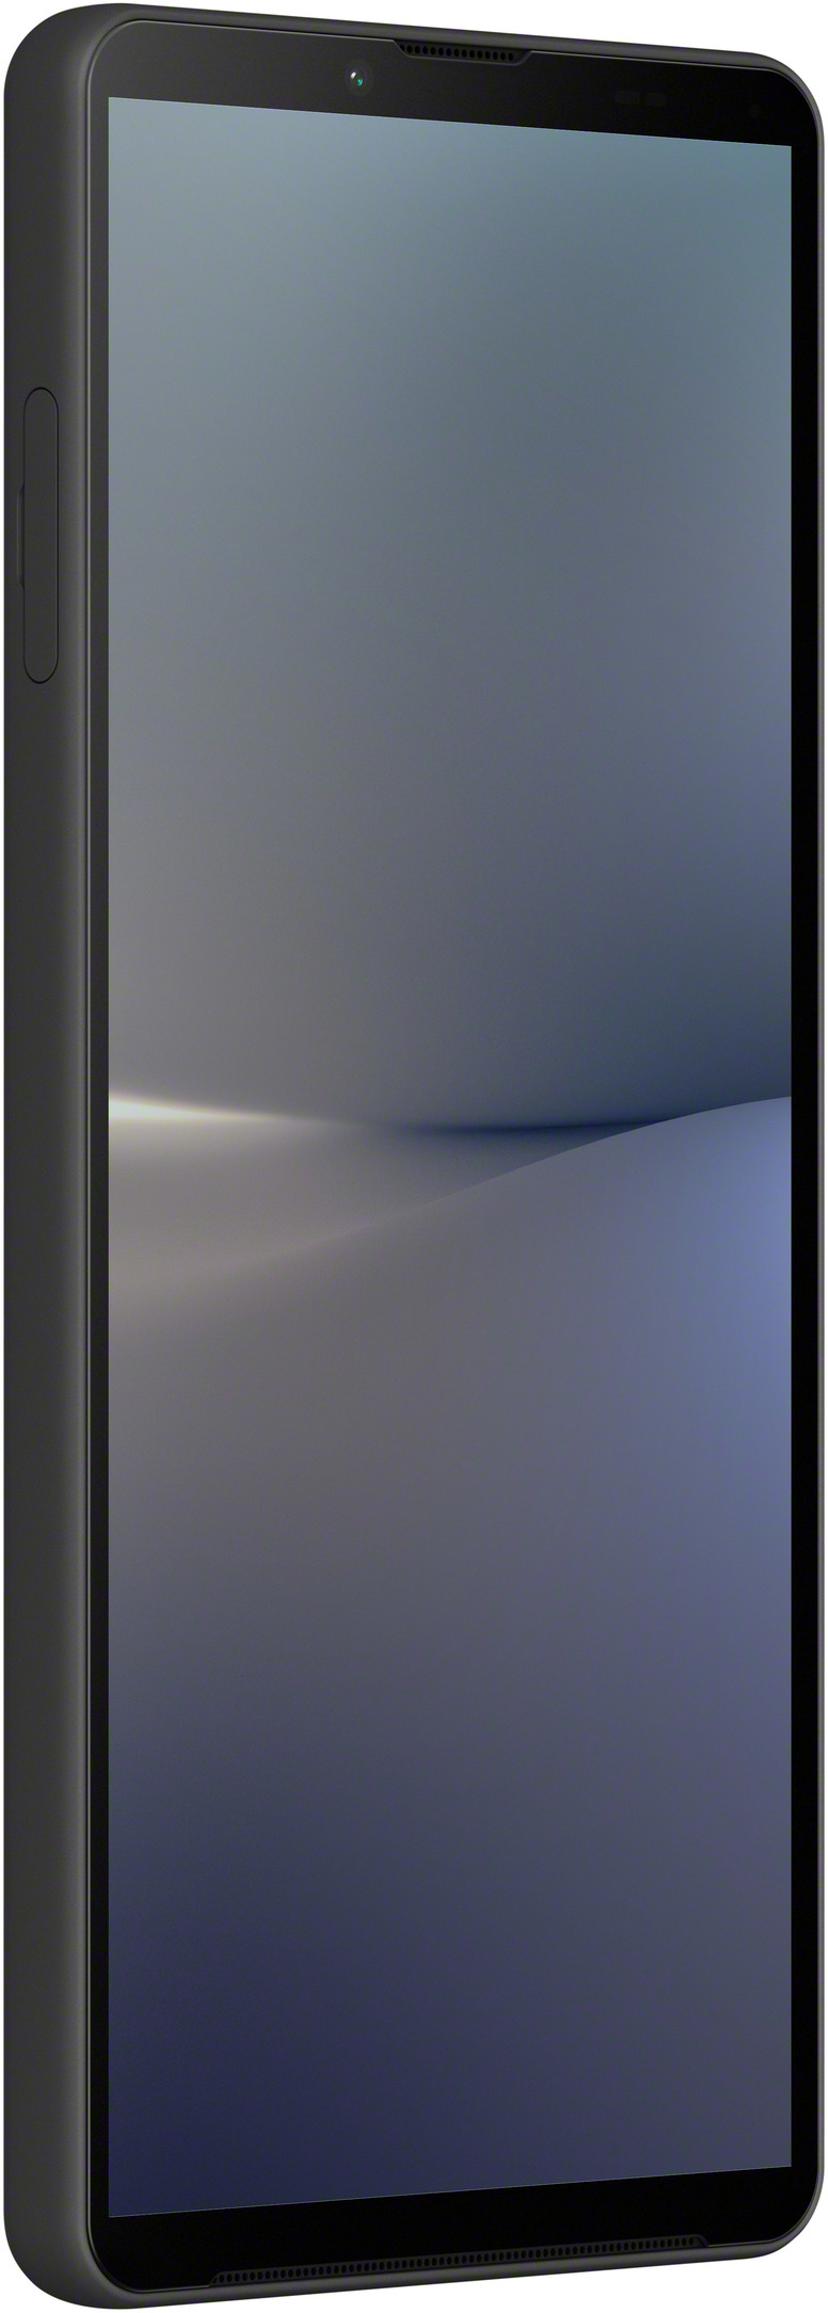 Sony XPERIA 10 V 128GB Dual-SIM Sort